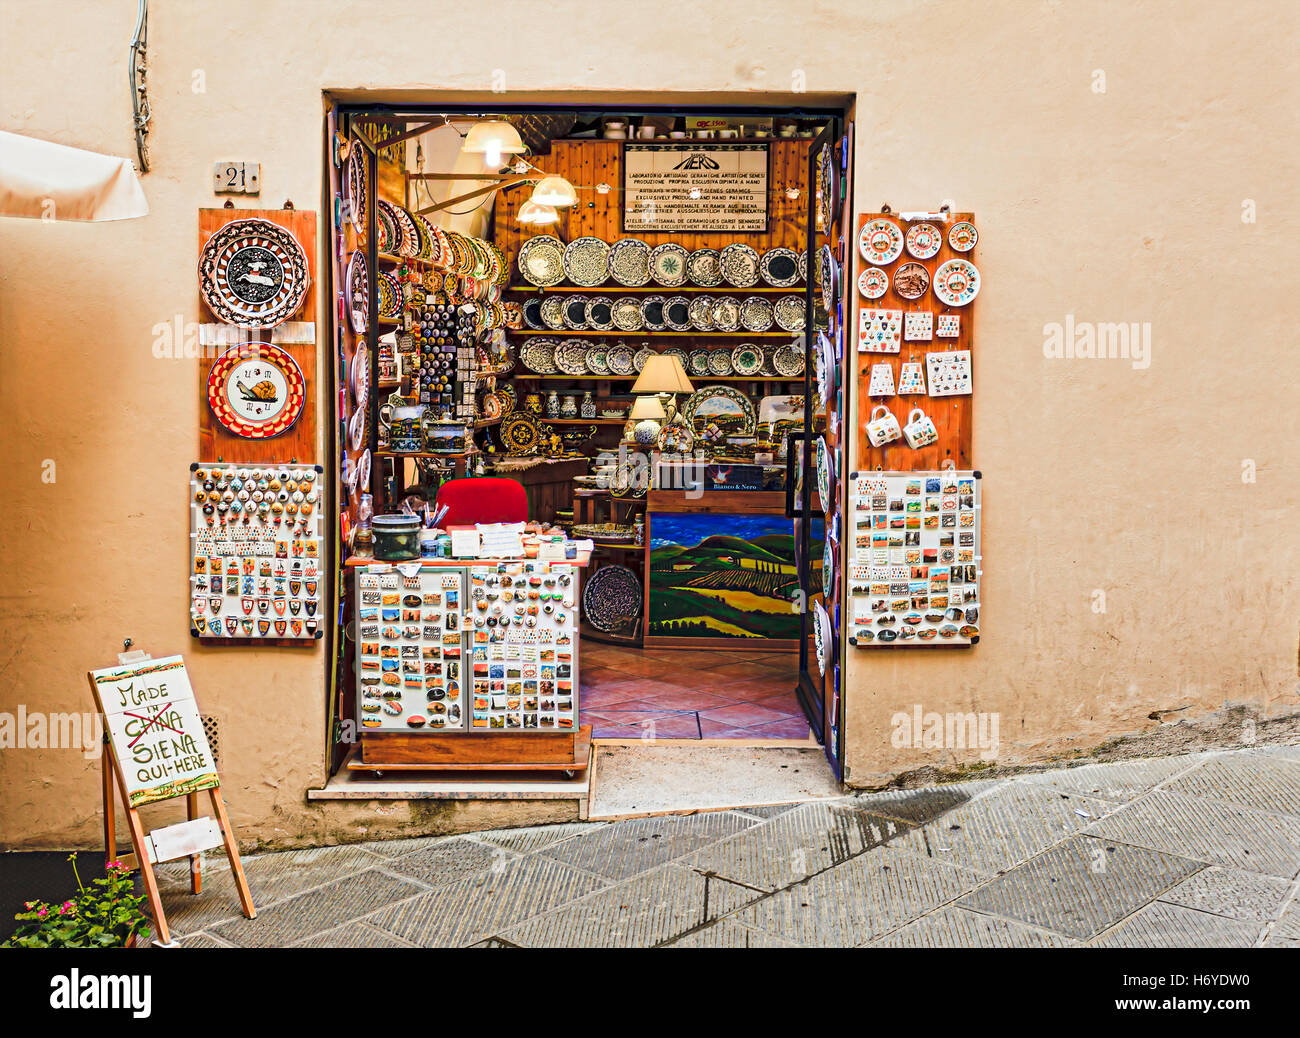 Sienne, ITALIE - 29 juin 2013 : l'art traditionnel et une boutique de souvenirs dans la vieille ville de Sienne, Italie dans un territoire d'Contrade Escargot. Banque D'Images